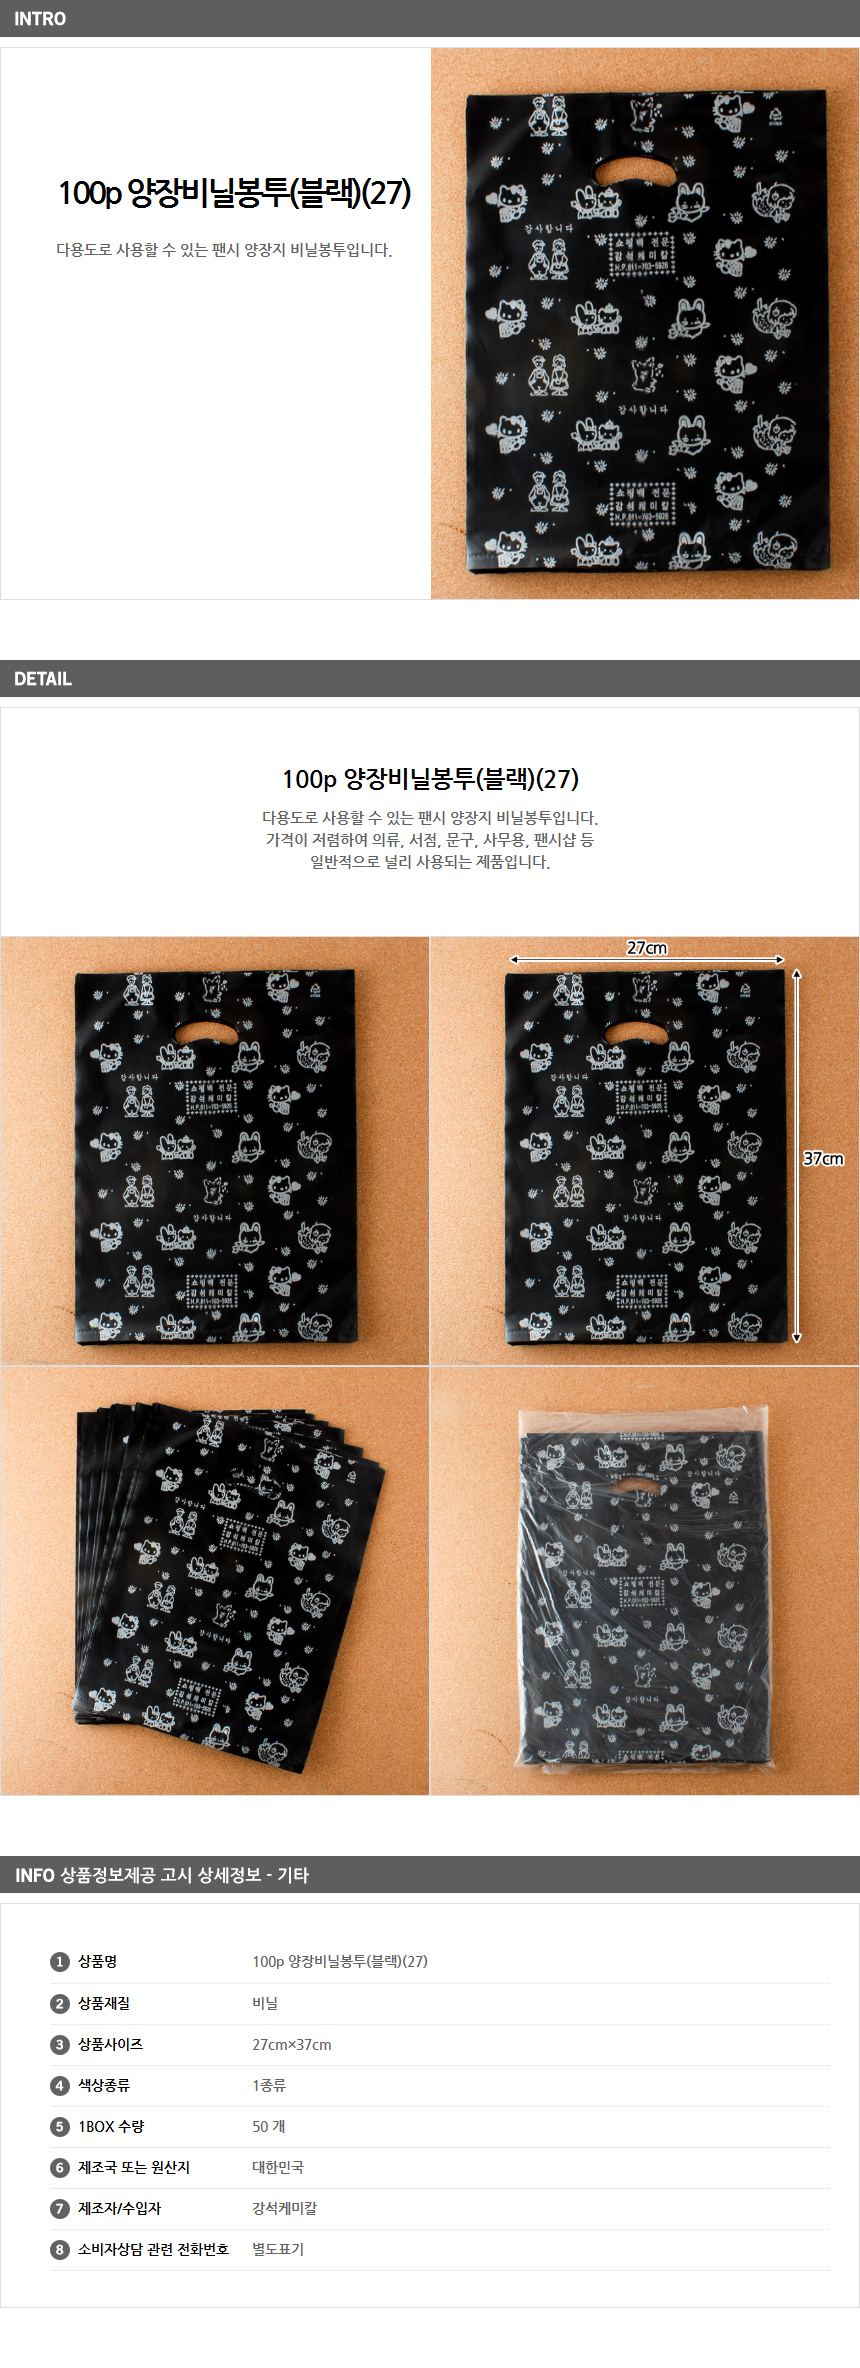 100p 팬시비닐봉투 27/ 서점 비닐쇼핑백 쇼핑비닐봉투